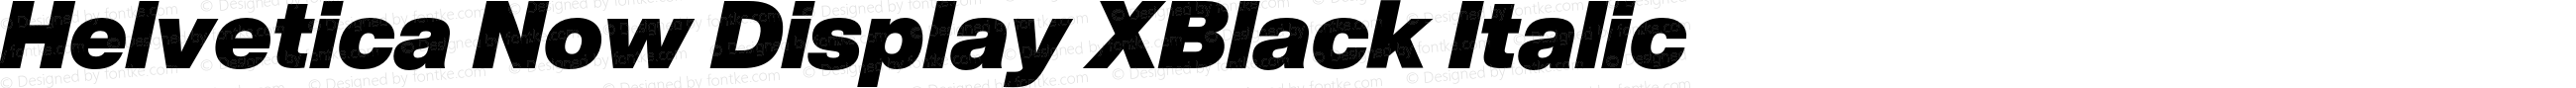 Helvetica Now Display XBlack Italic